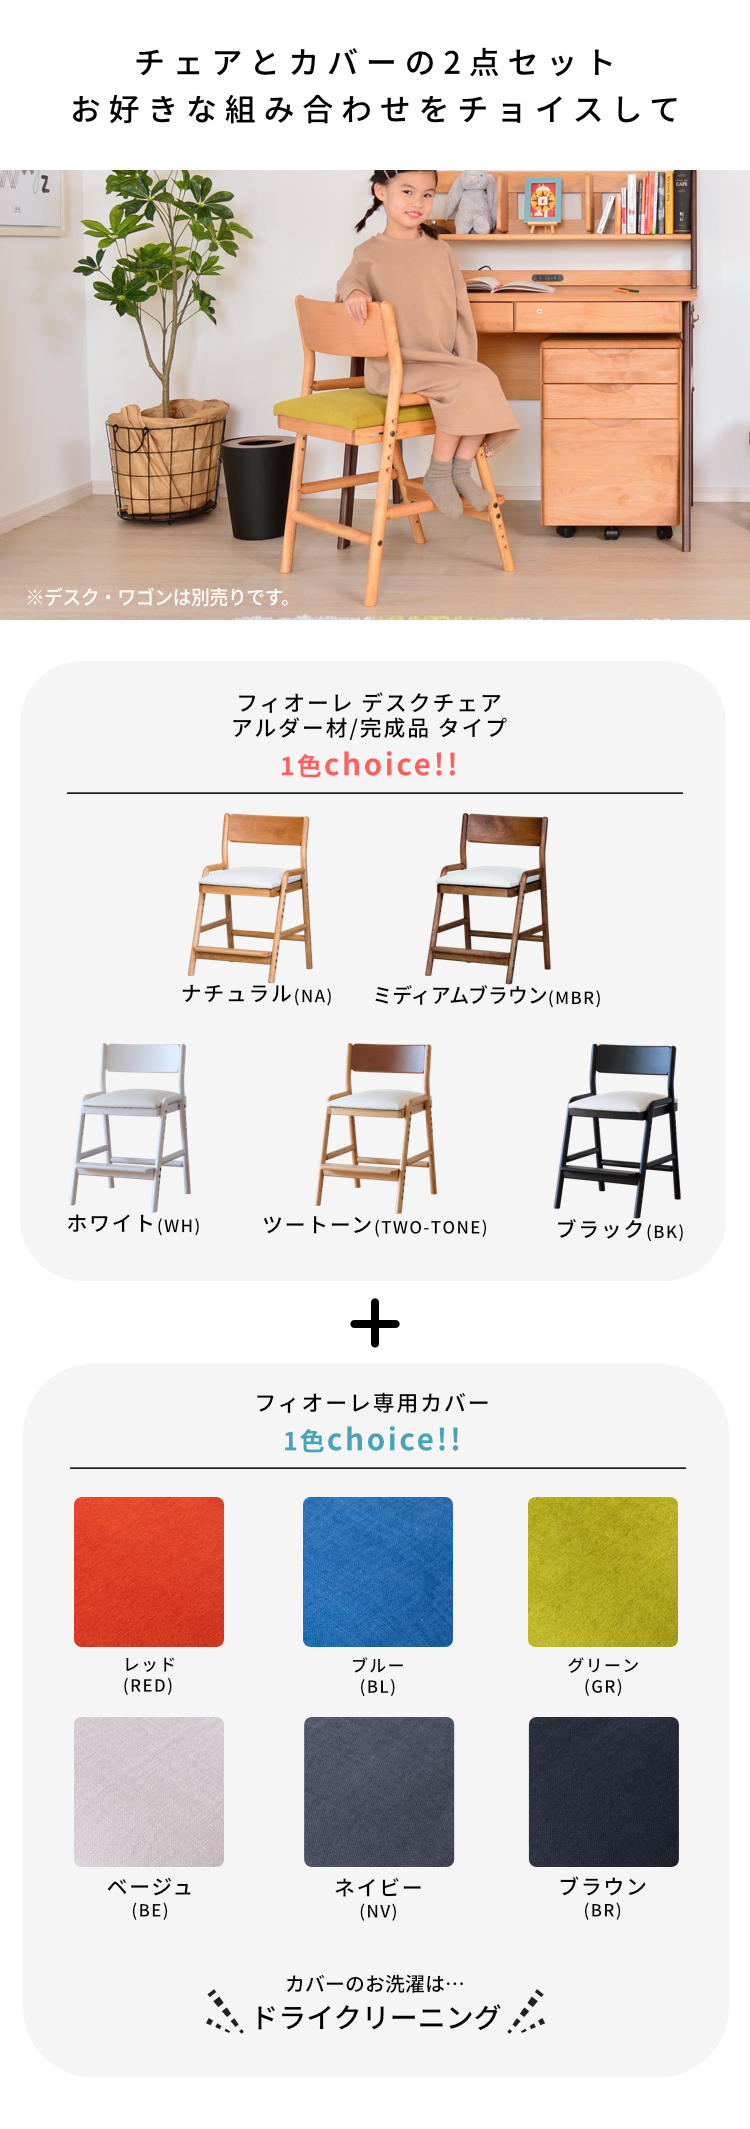 学習椅子 学習チェア キッズチェア 子供 木製 おしゃれ 姿勢 カバー